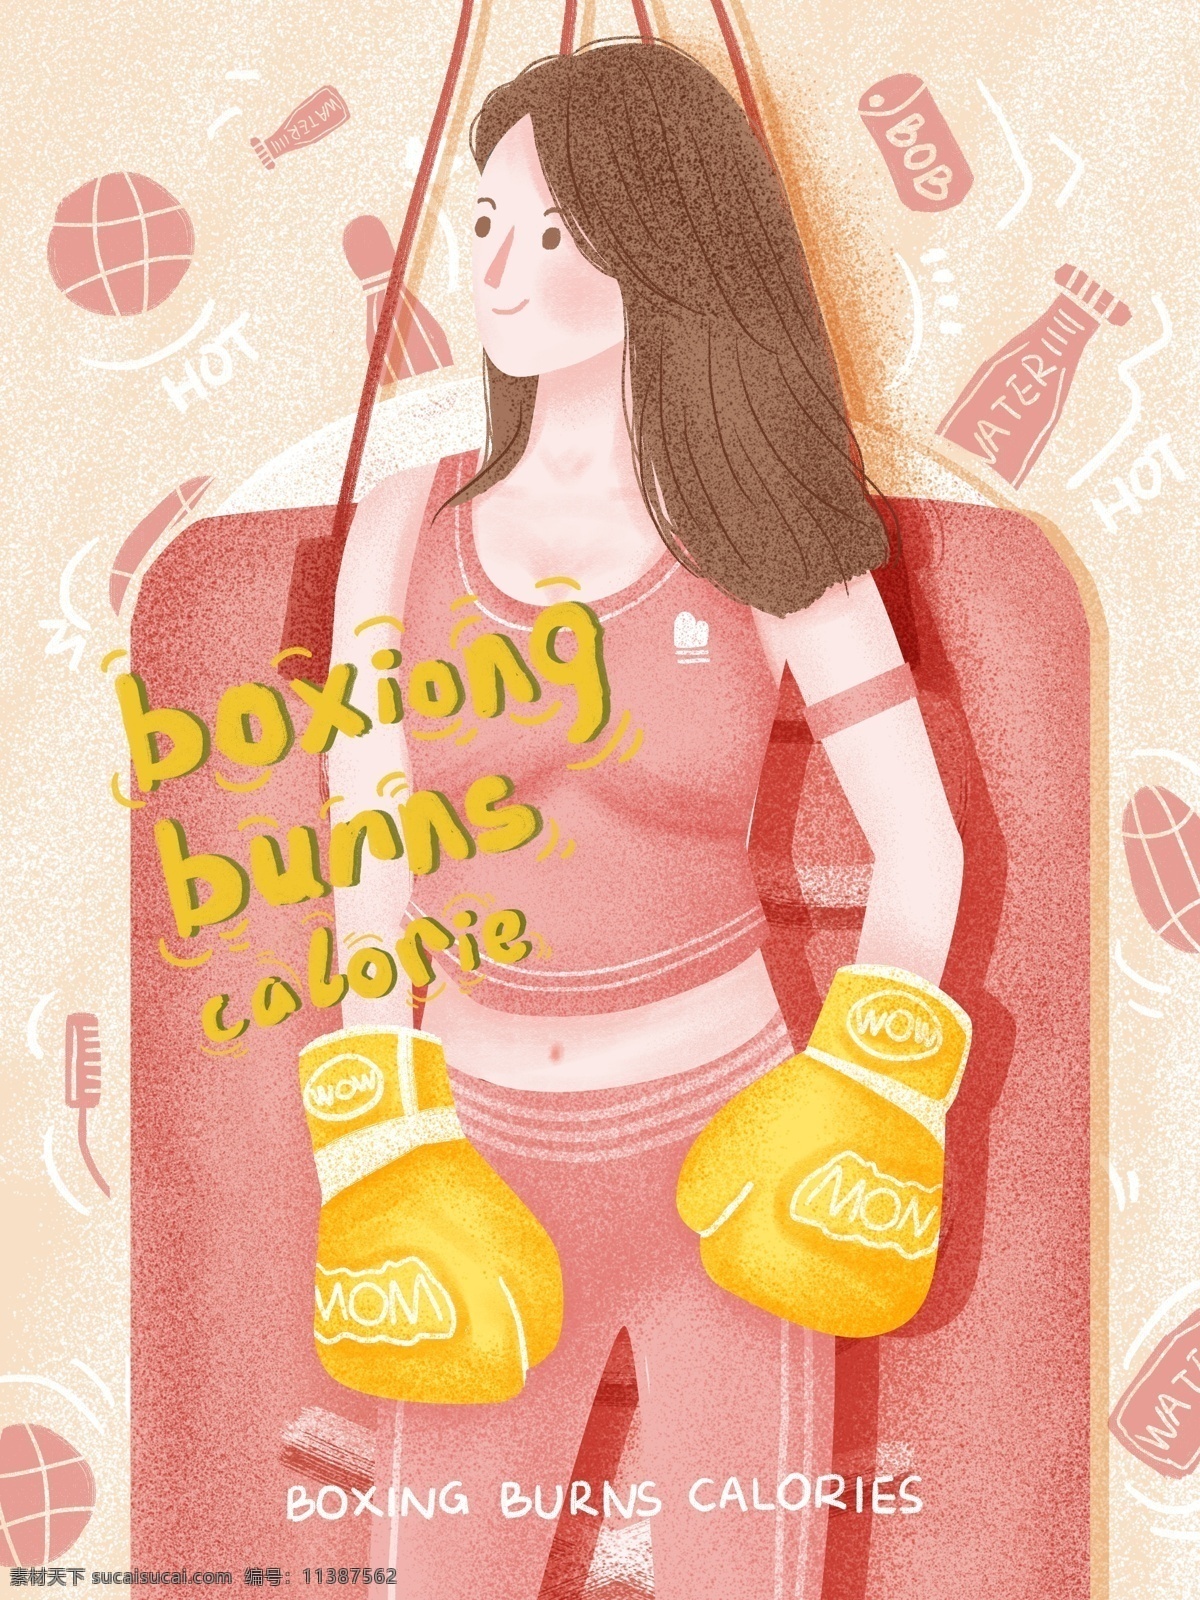 个性 小 姐姐 健身 拳击 燃烧 卡路里 创意 海报 的卡 路里 沙包 创意海报 健身海报